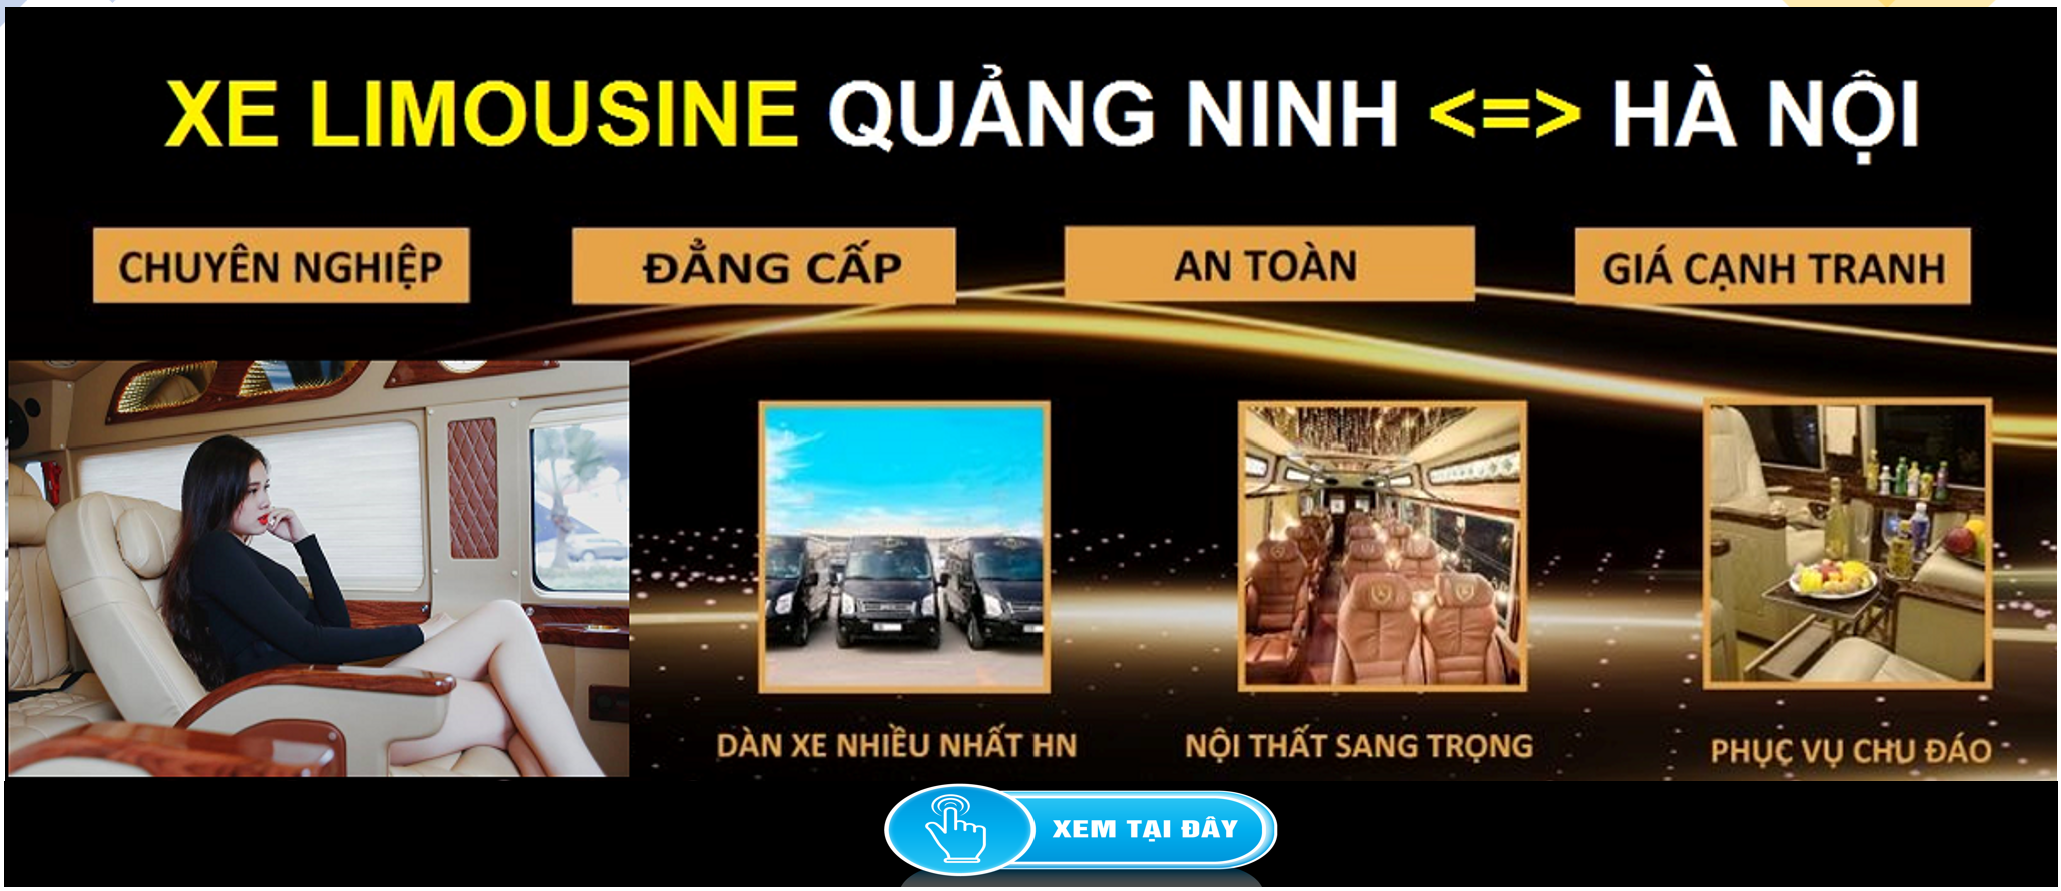 Xe Limousine Ha Noi Quang Ninh dua don tai nha 1d - Thời gian làm việc và địa chỉ các điểm đăng ký ô tô tại TP Hồ Chí Minh